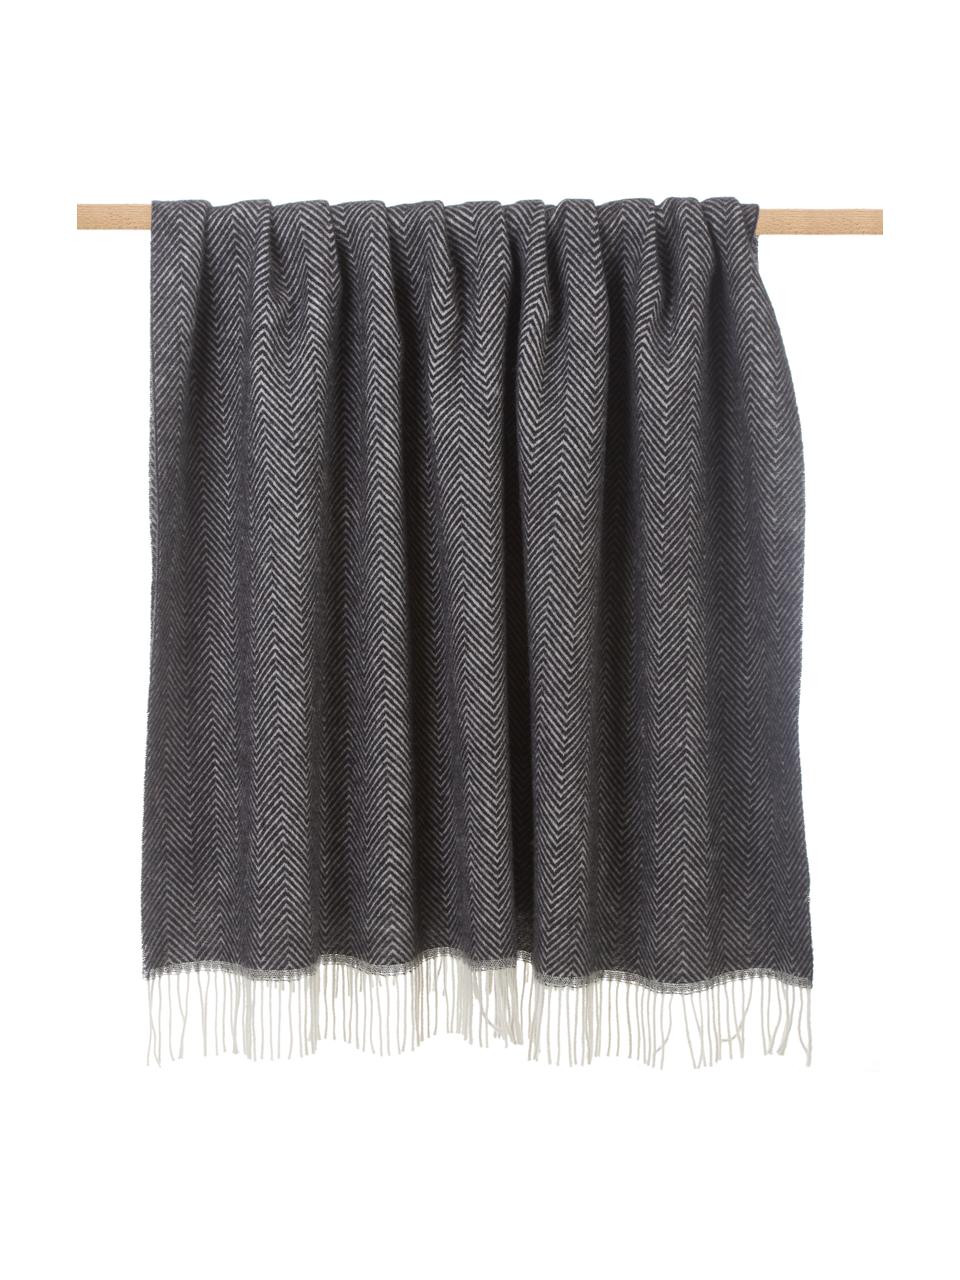 Couverture en laine avec motif à chevrons et franges Tirol-Mona, Noir, larg. 140 x long. 200 cm